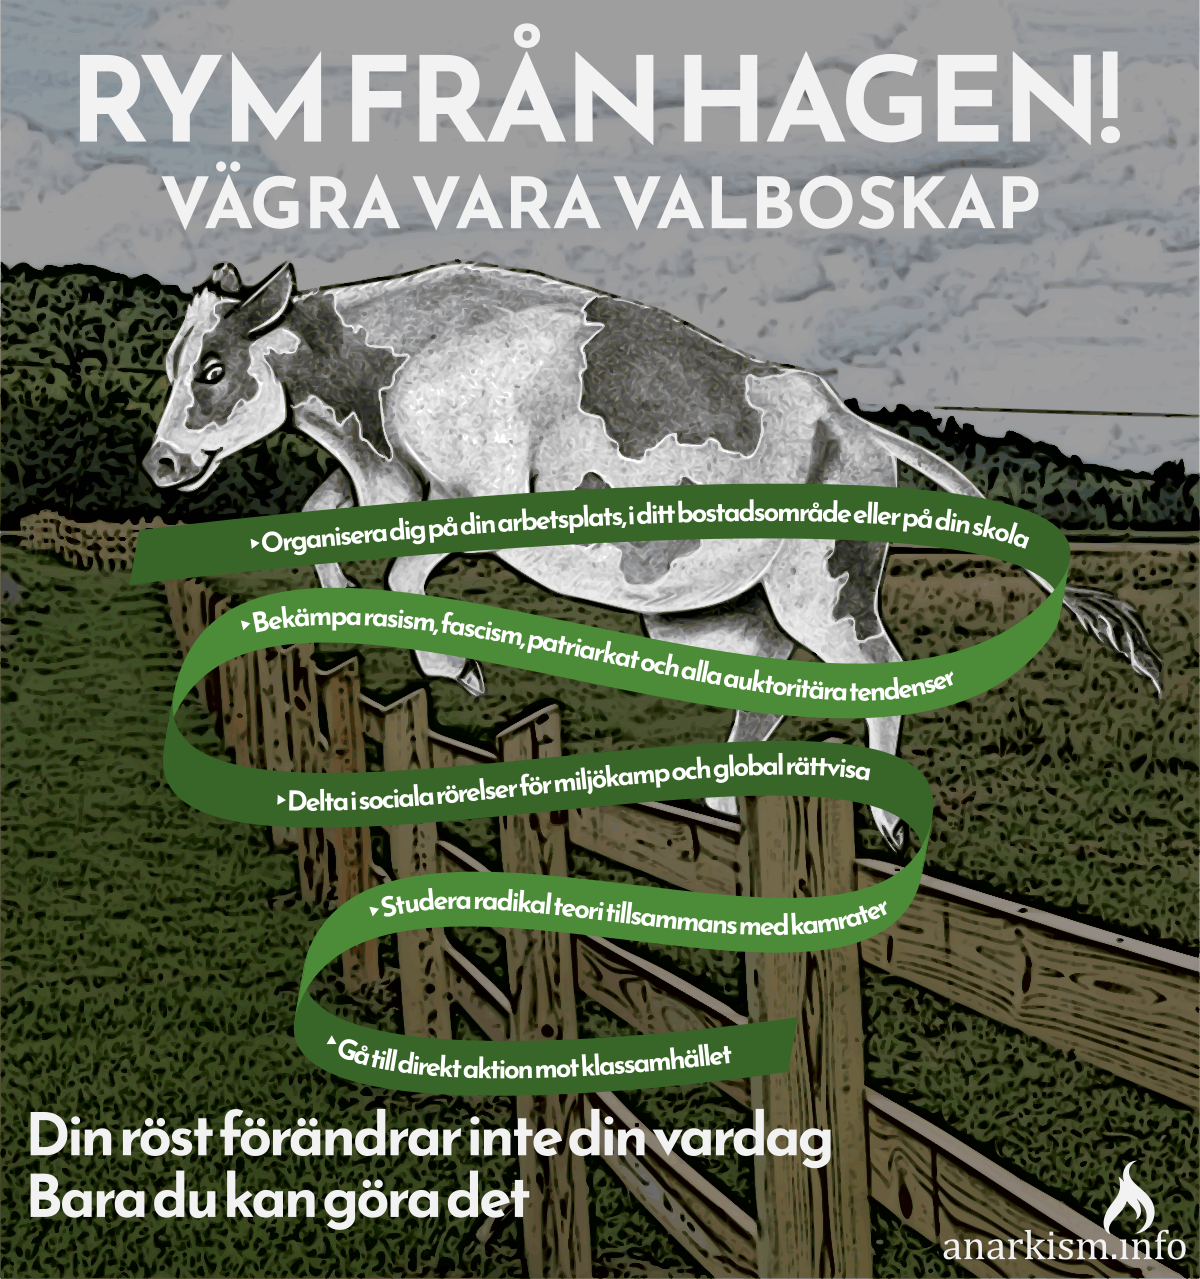 RYM FRÅN HAGEN - Vägra vara valboskap.